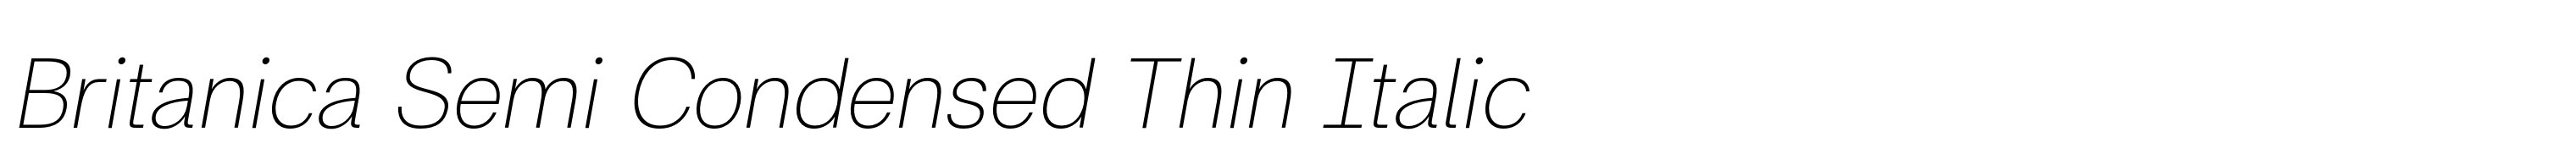 Britanica Semi Condensed Thin Italic